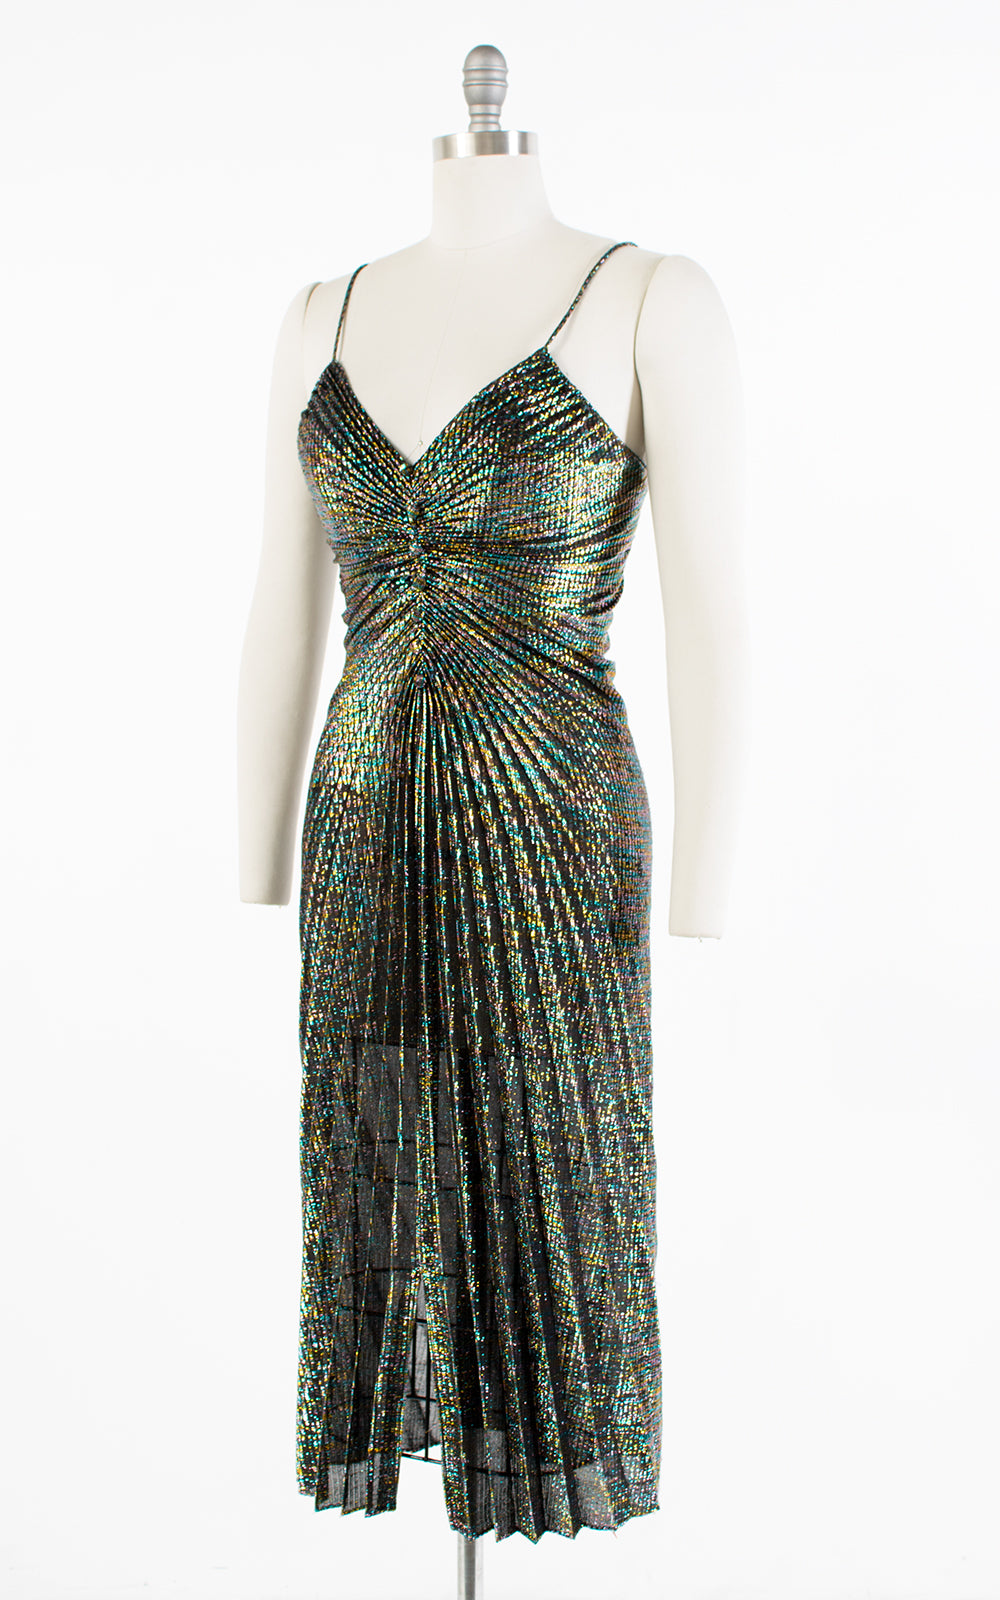 1970s Travilla Style Metallic Rainbow Pleated Party Dress | small/medium